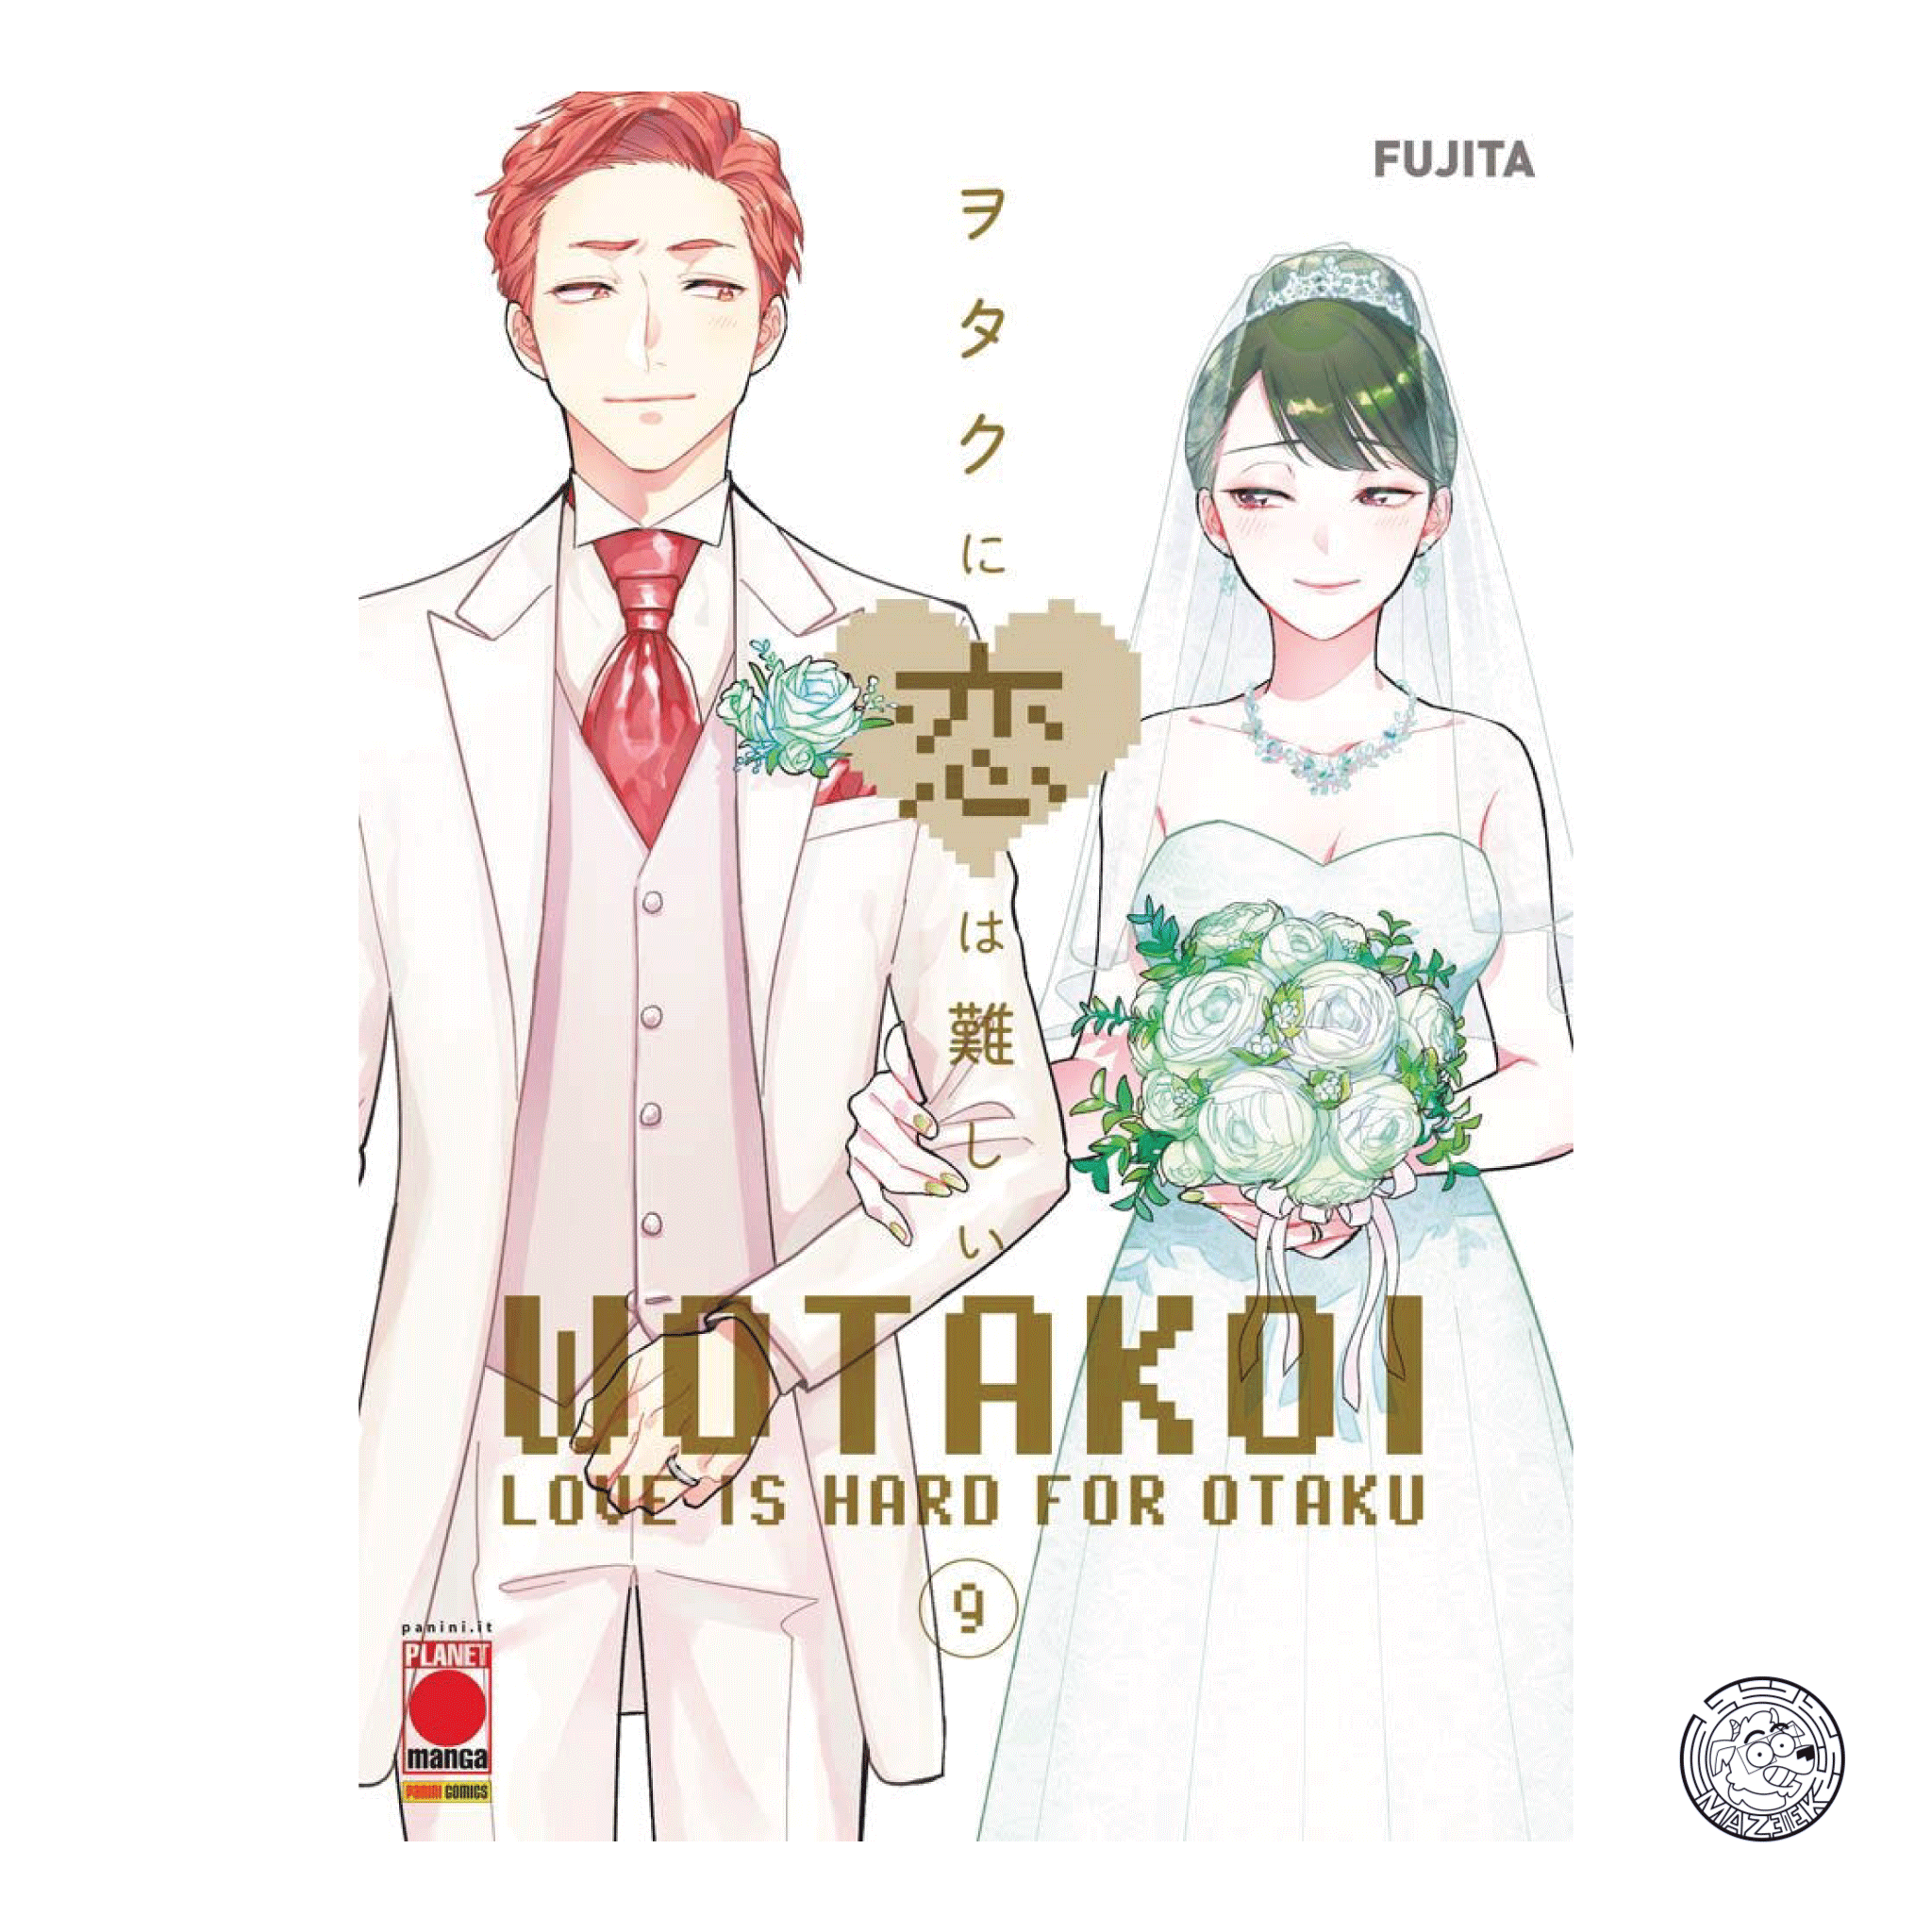 Wotakoi 09